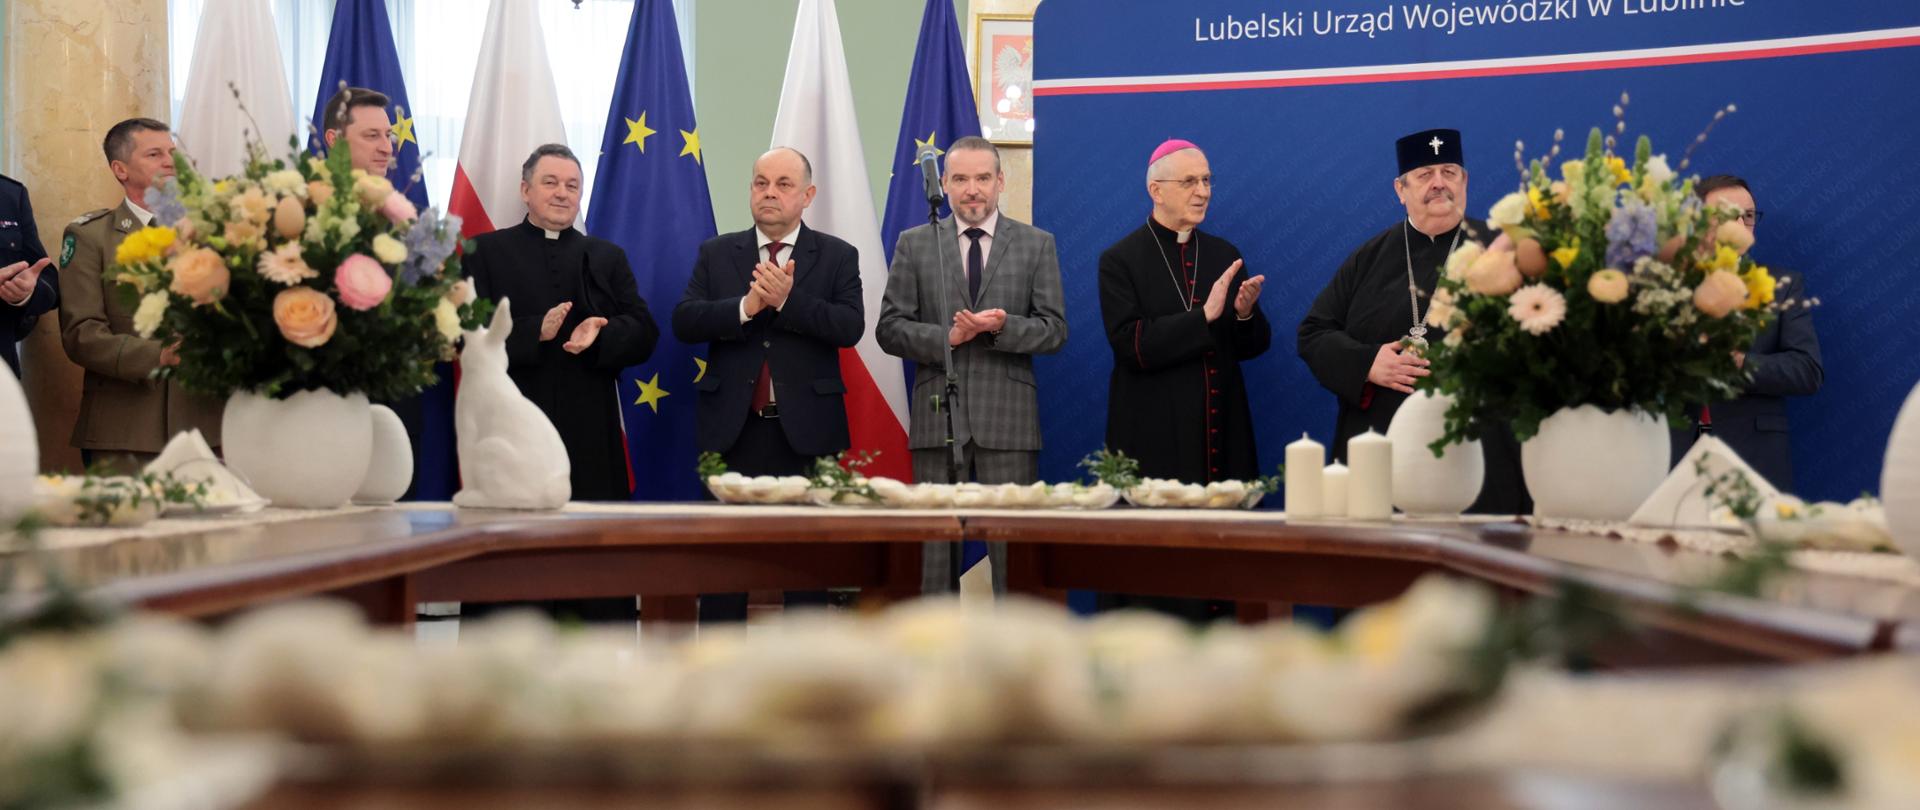 Spotkanie wielkanocne w Lubelskim Urzędzie Wojewódzkim